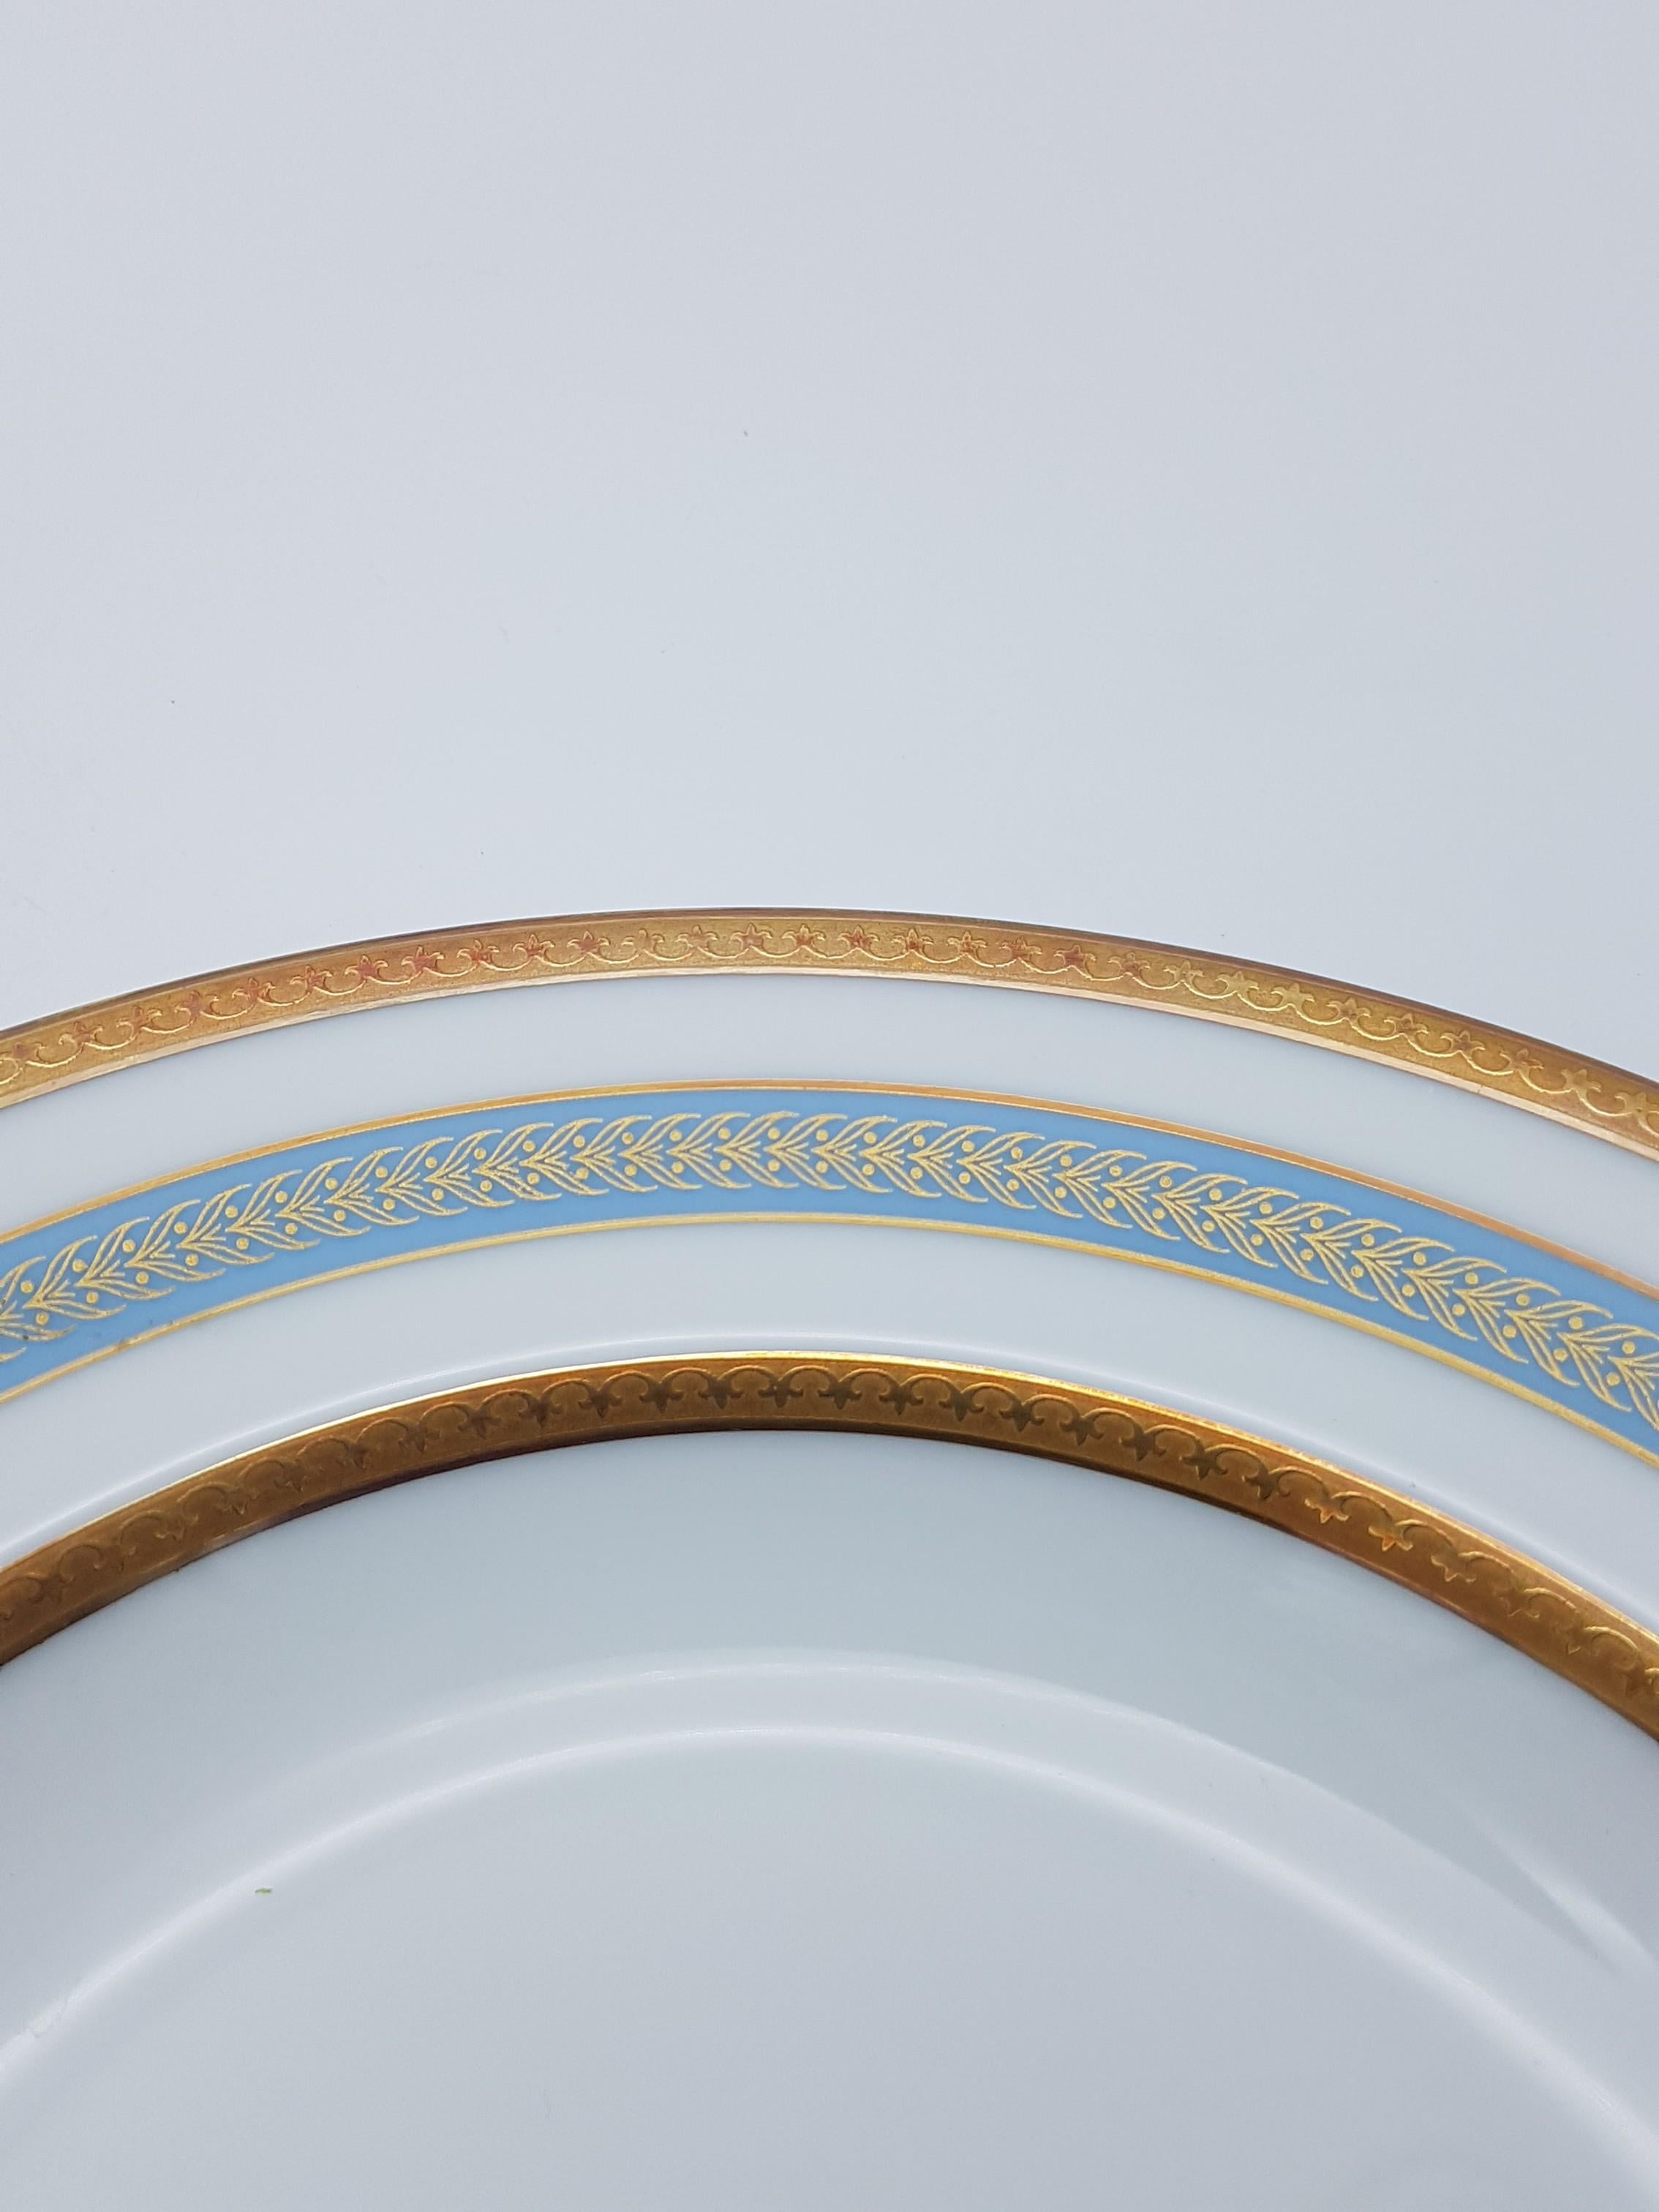 Heinrich Bavaria Porcelain Dinner Service, 18-Piece Gold Rimmed Bone China Set For Sale 2